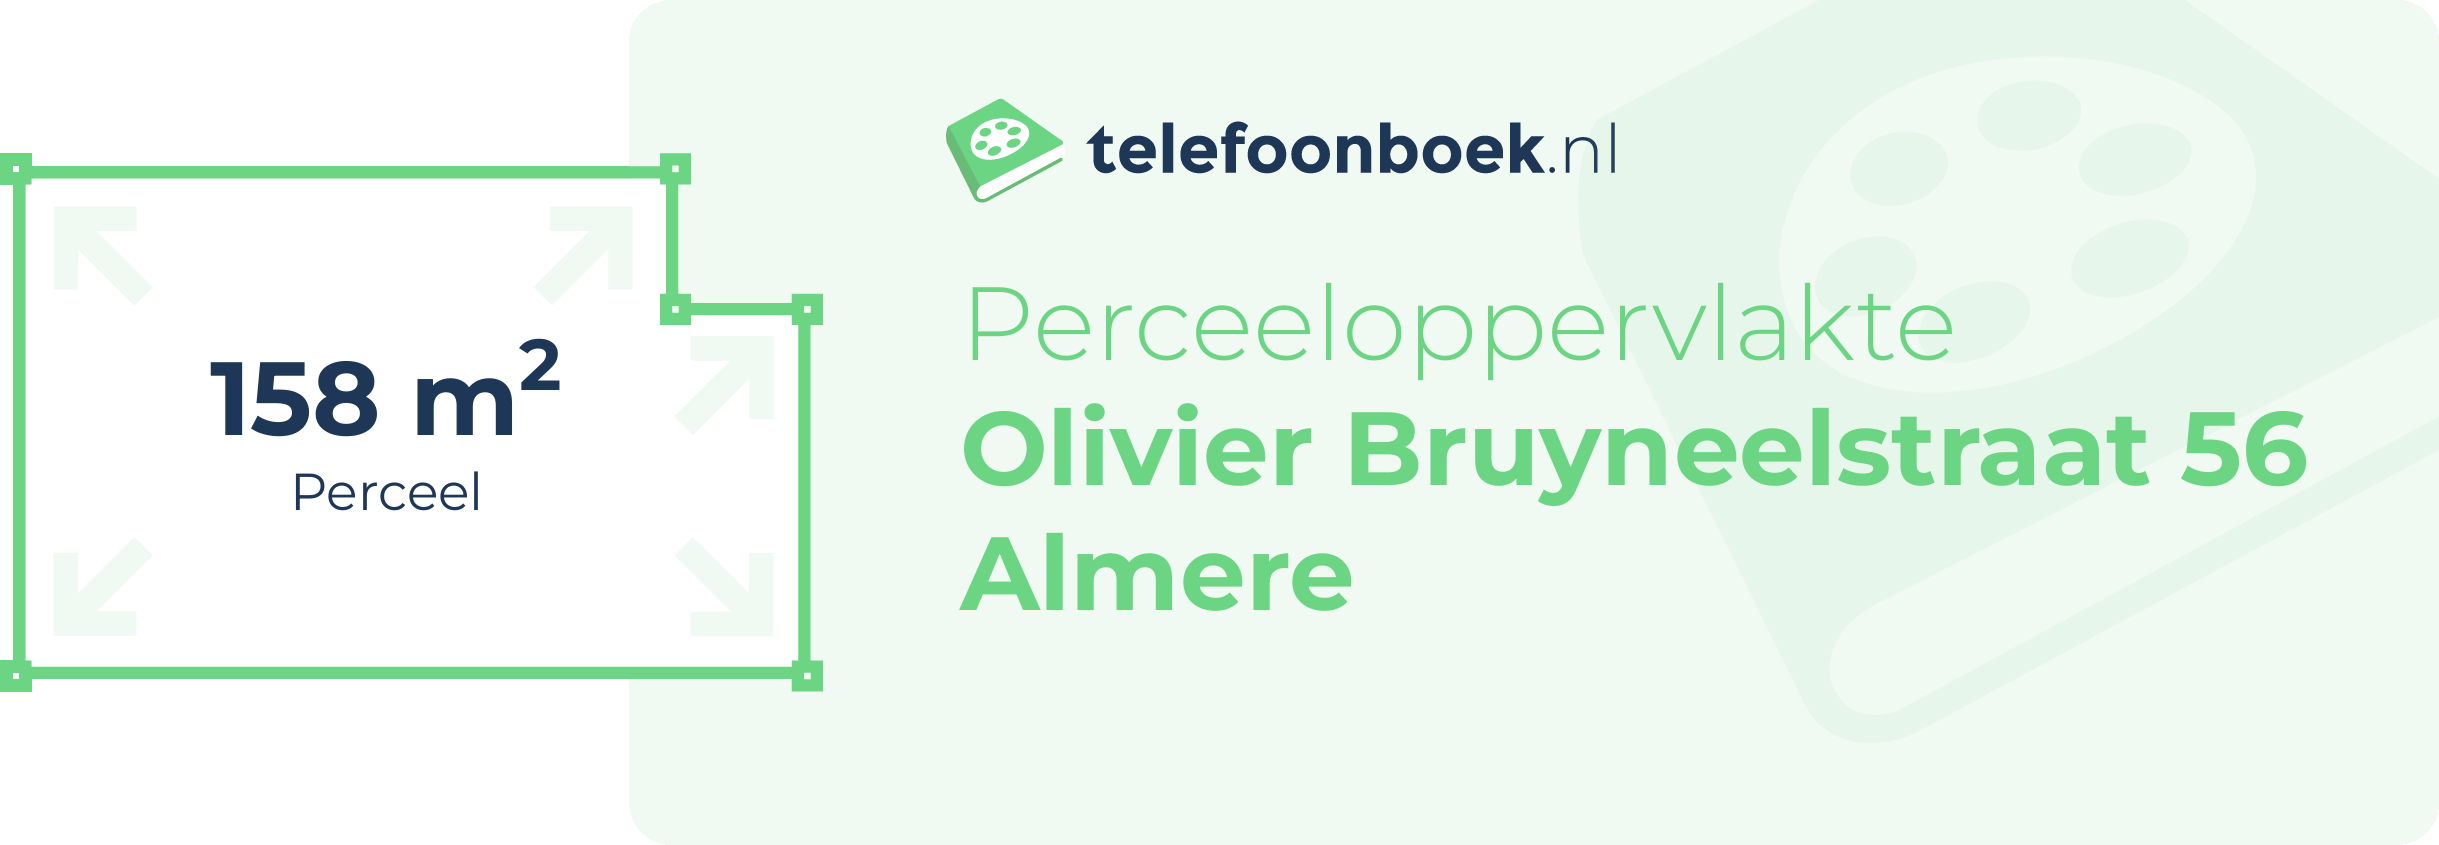 Perceeloppervlakte Olivier Bruyneelstraat 56 Almere